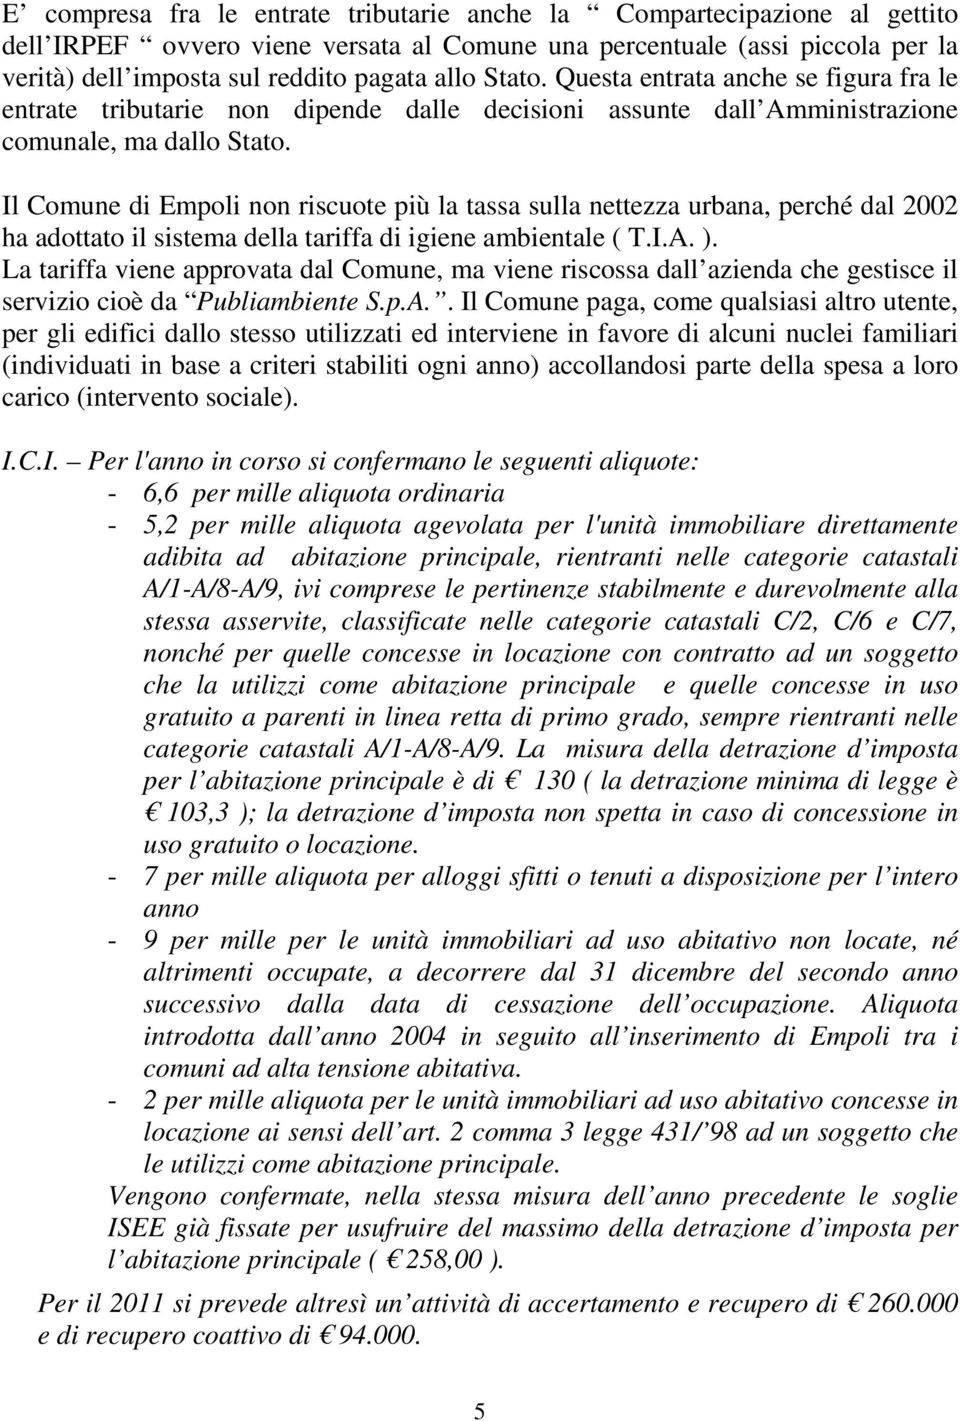 Il Comune di Empoli non riscuote più la tassa sulla nettezza urbana, perché dal 2002 ha adottato il sistema della tariffa di igiene ambientale ( T.I.A. ).